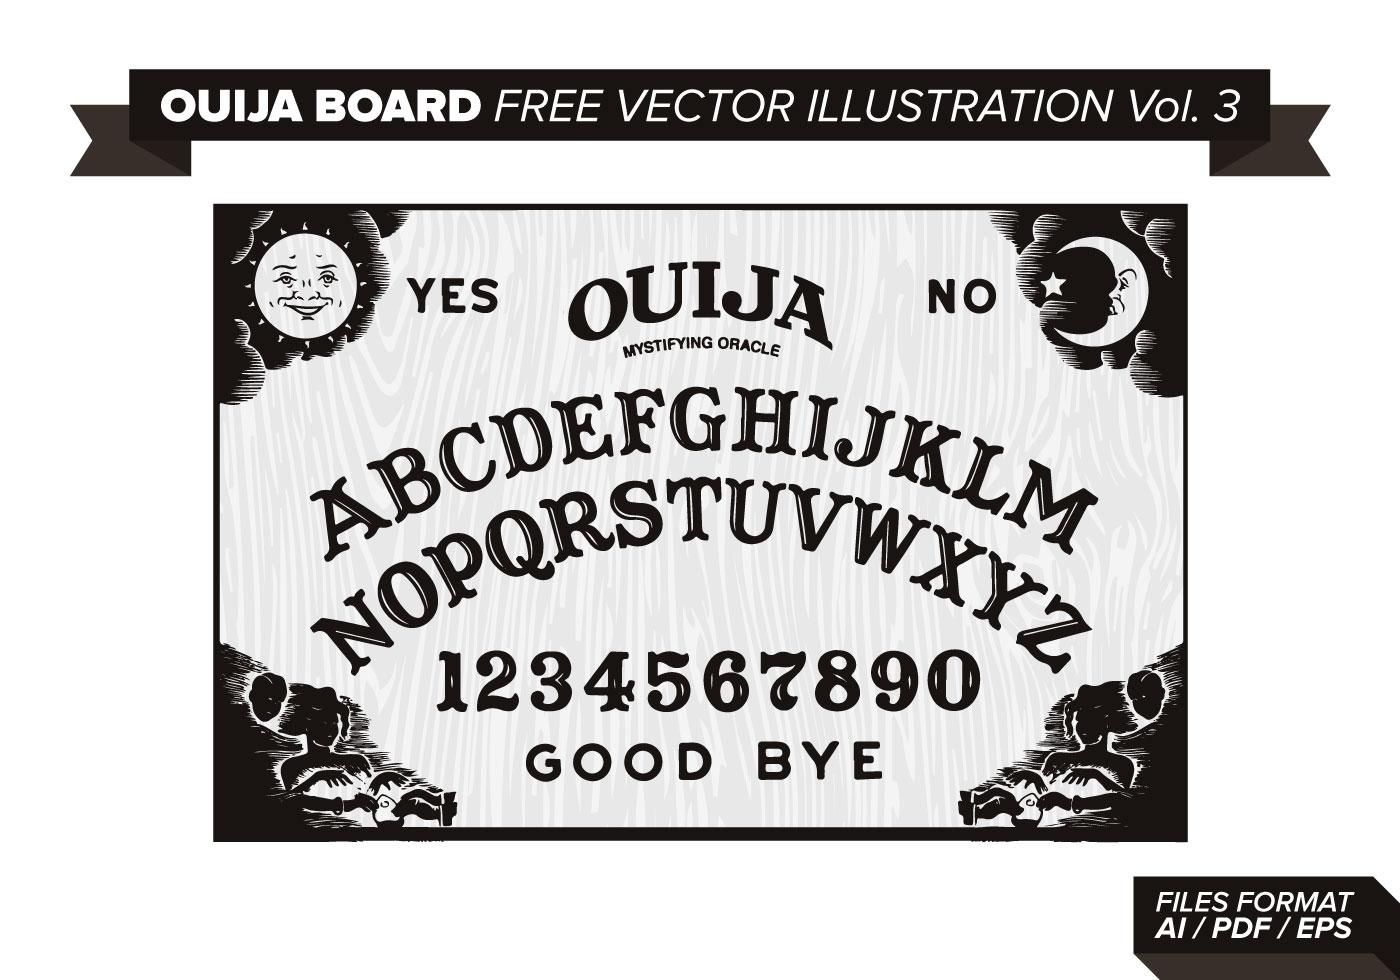 Ouija Junta Ilustración vectorial libre Vol. 3 Vector gratuito.